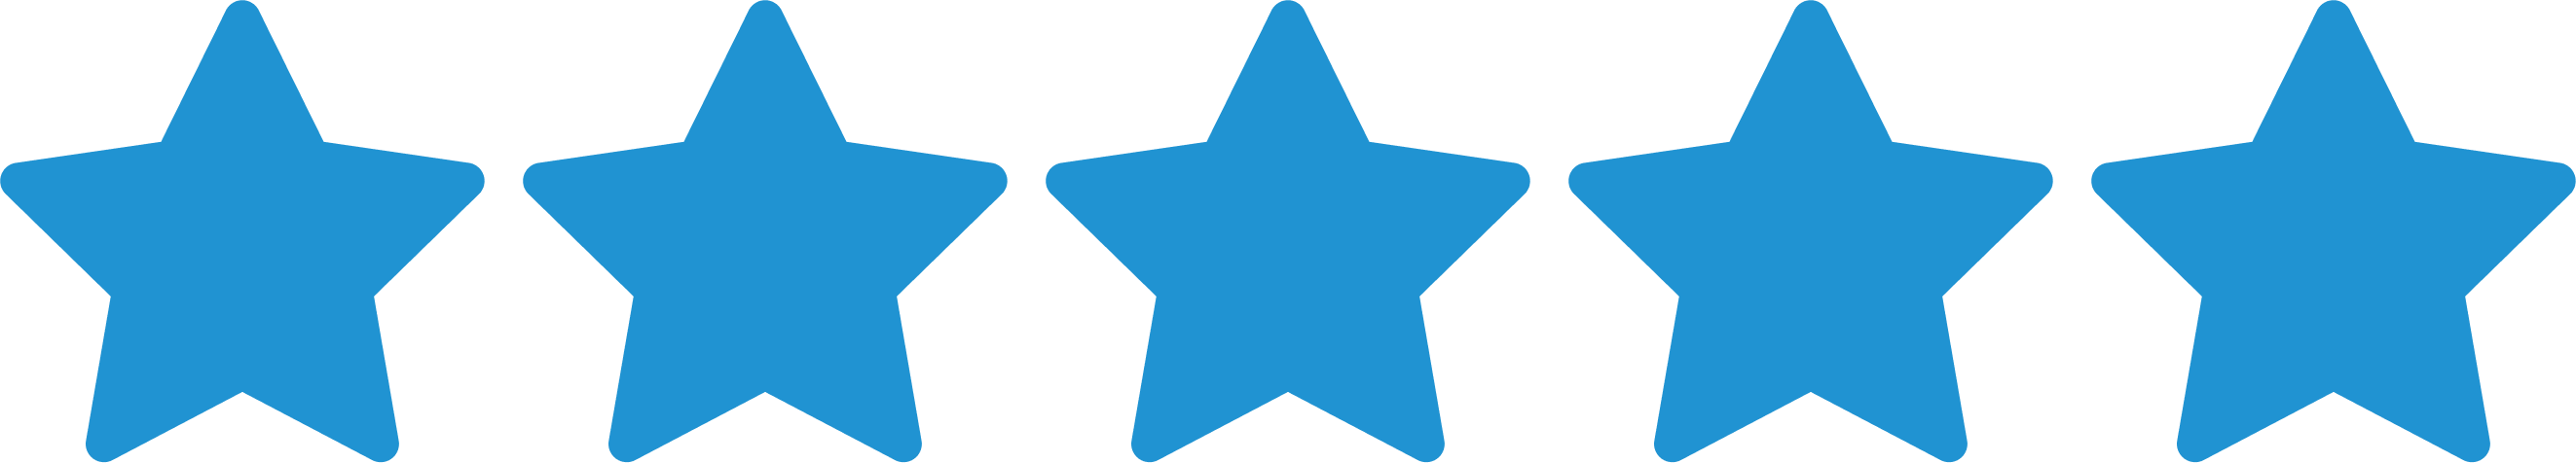 testimonial-star-rating